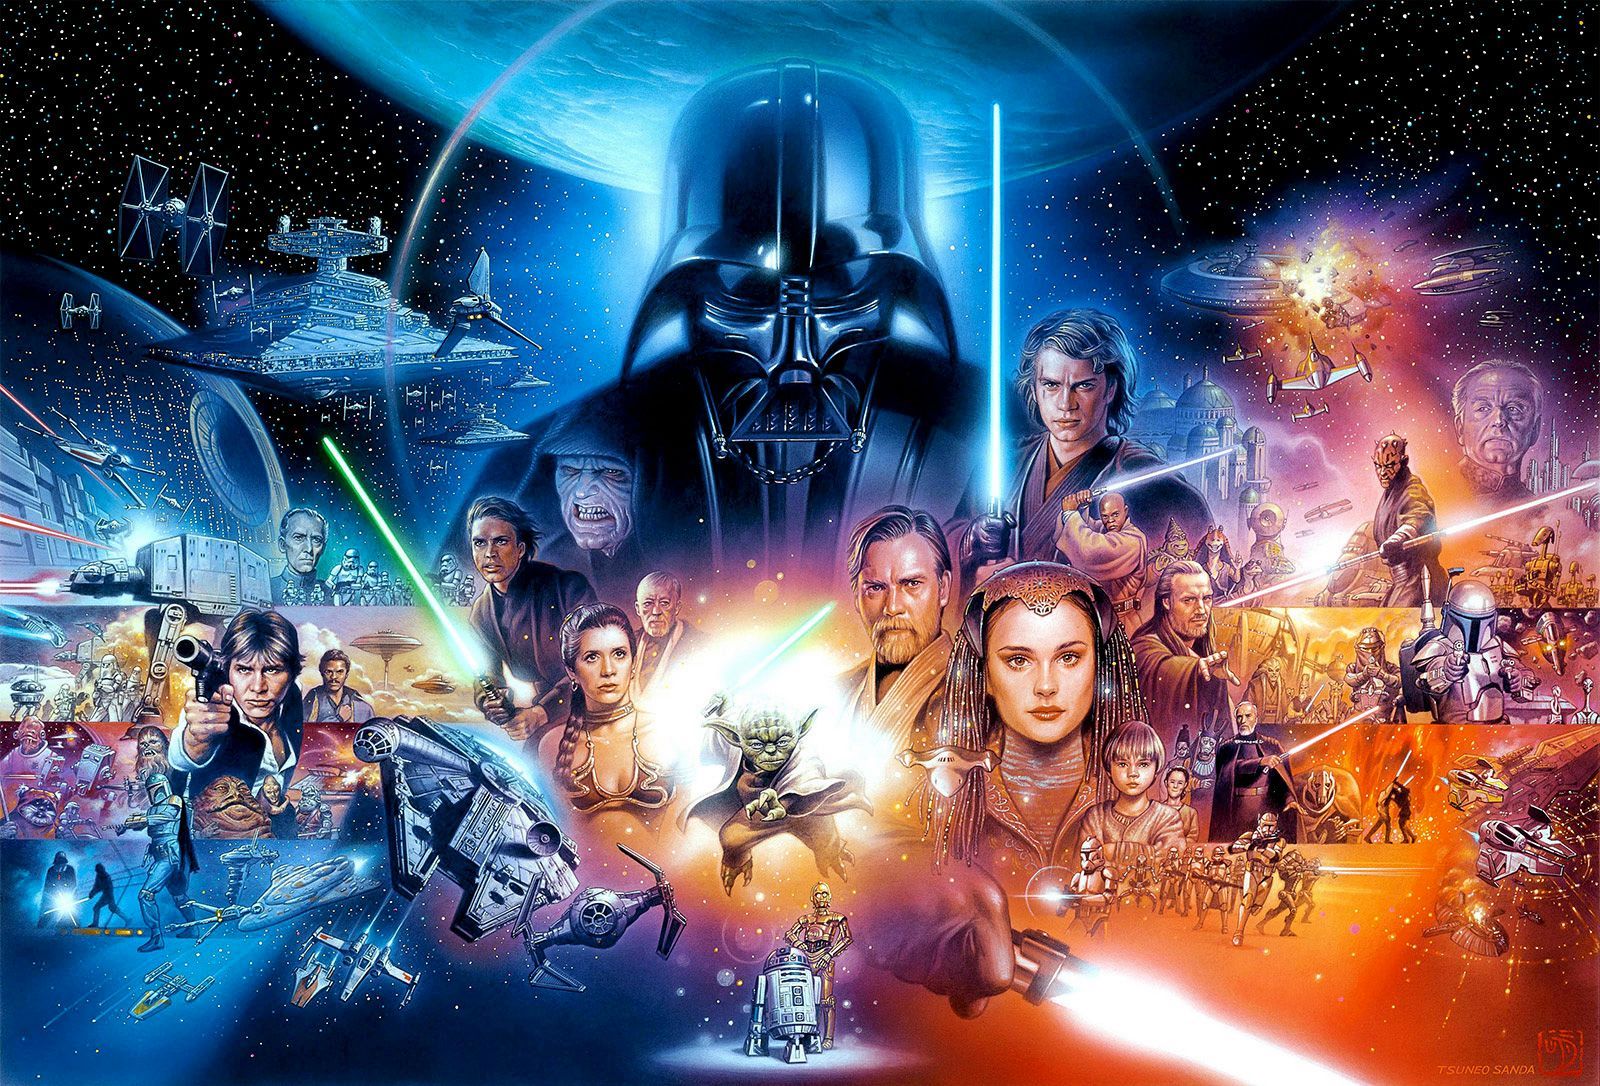 Star Wars: LINHA DO TEMPO e COMO ASSISTIR 